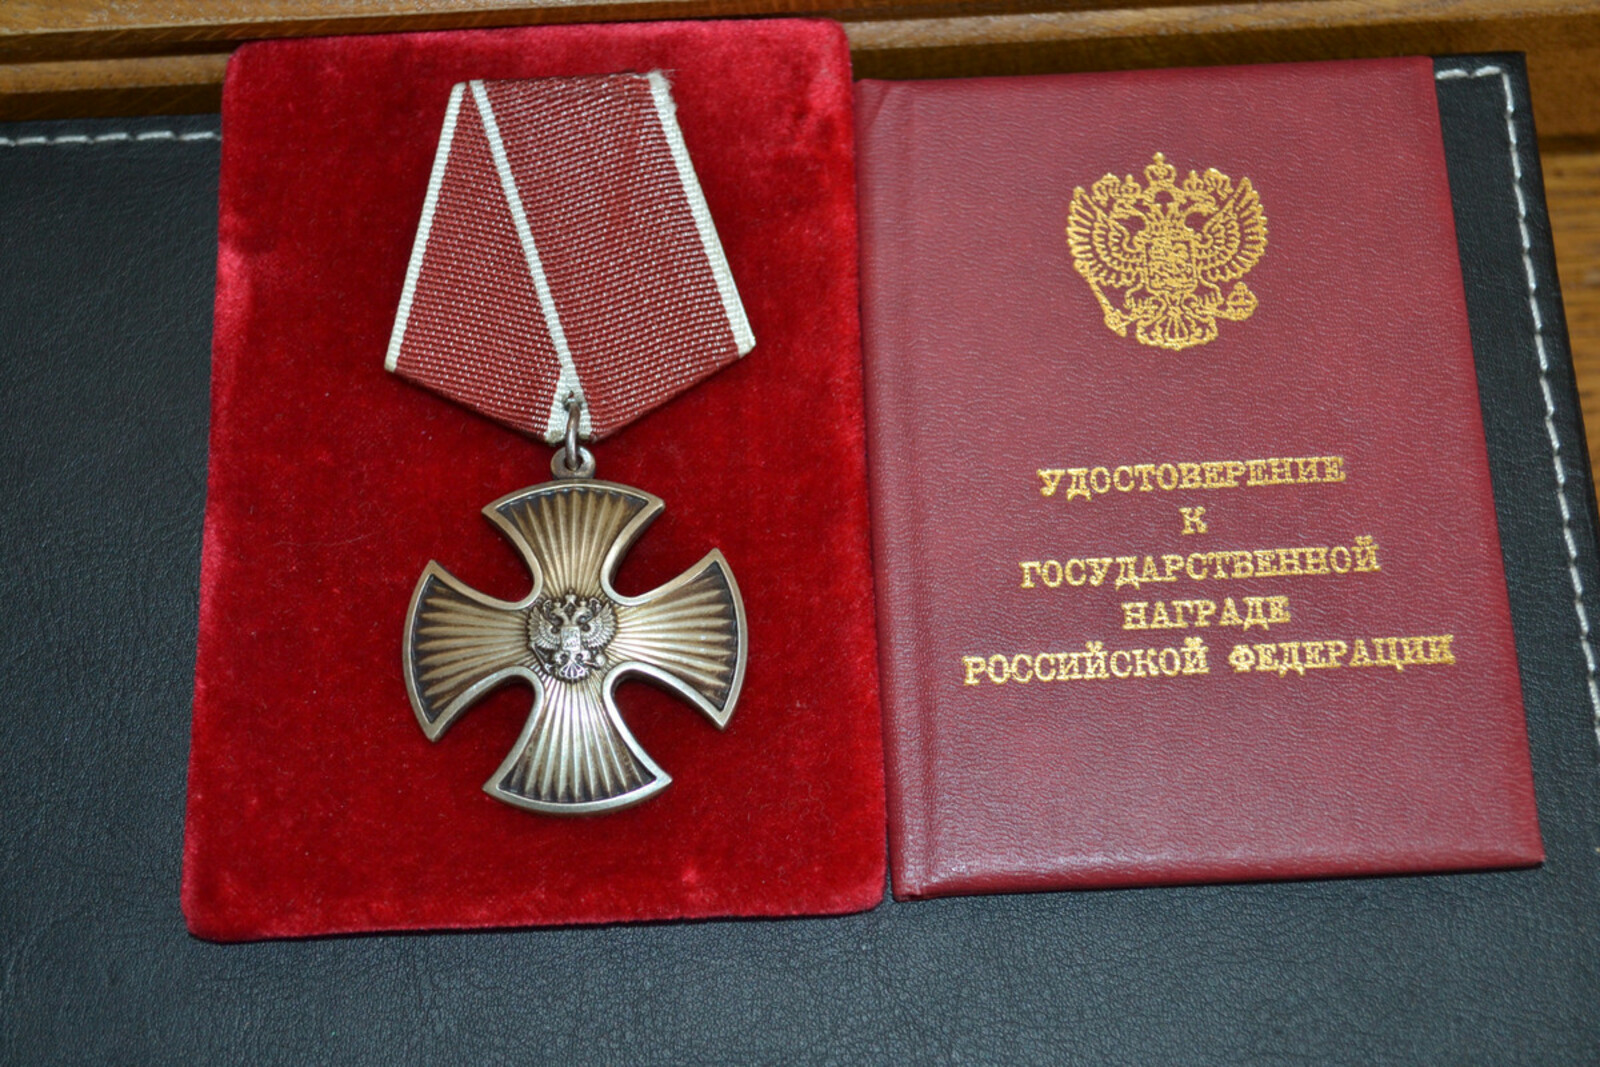 Мария Пирогова (үлгәндән һуң) Батырлыҡ ордены менән наградланды